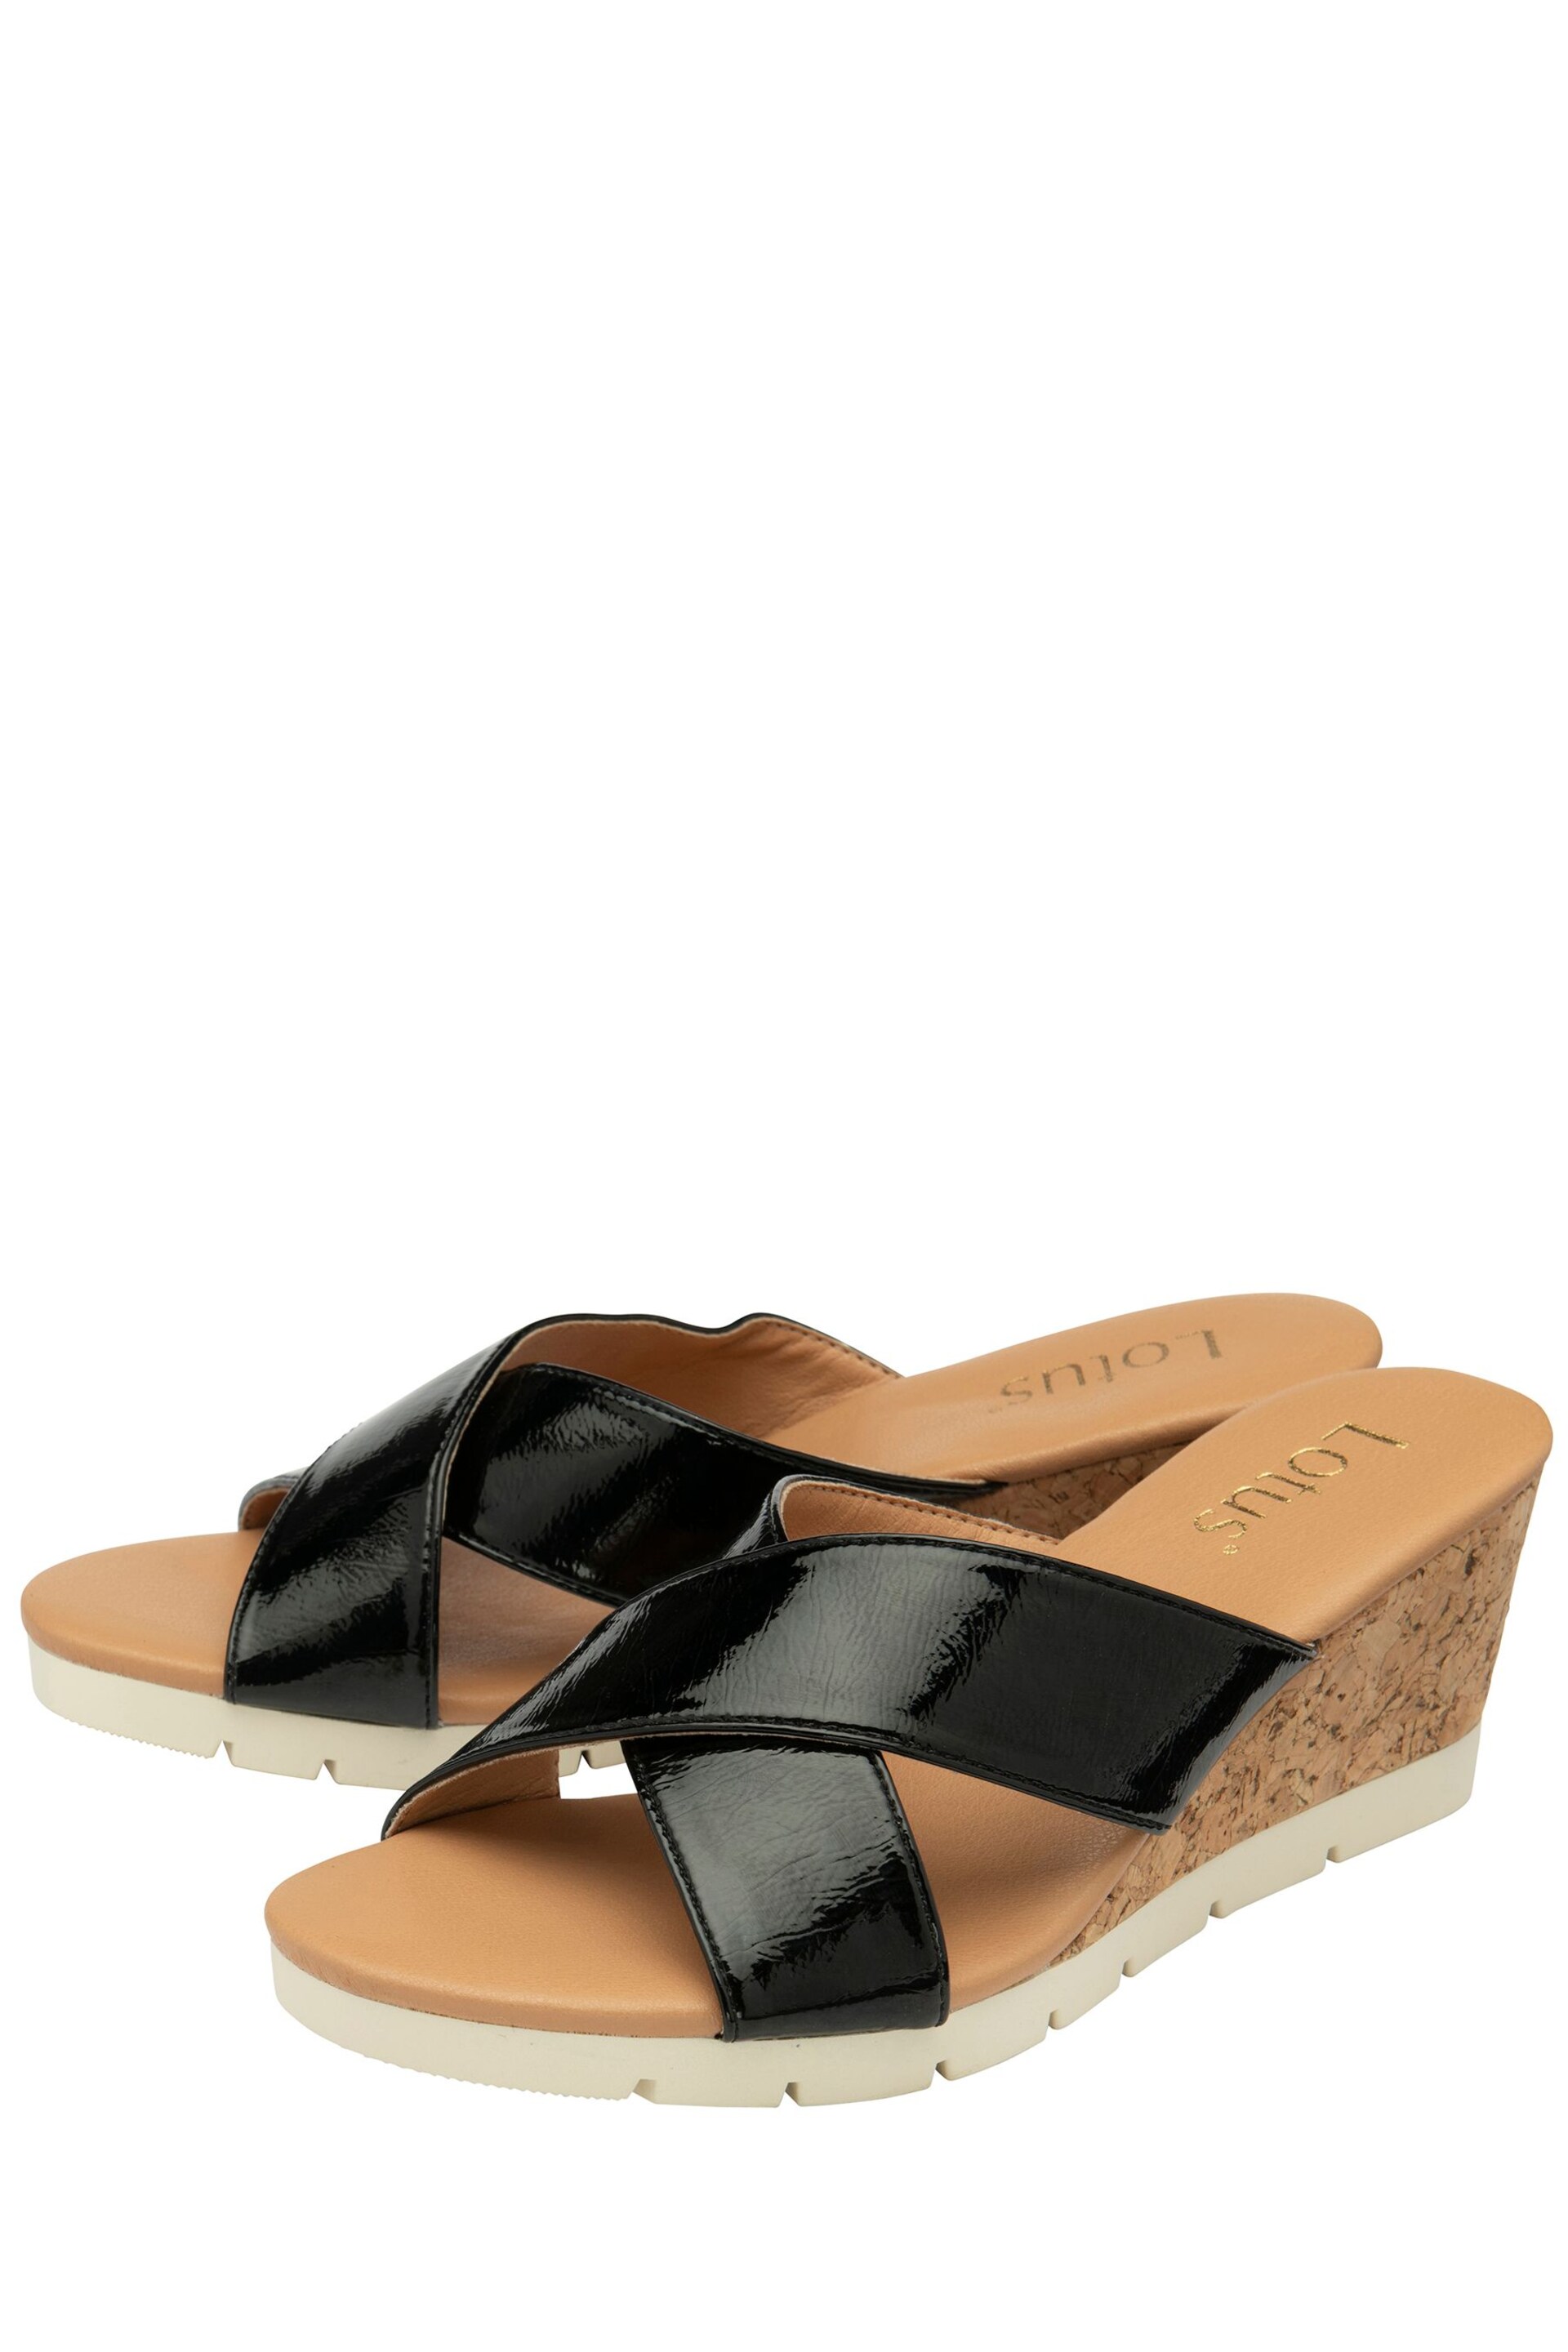 Lotus Black Mule Wedge Sandals - Image 2 of 4